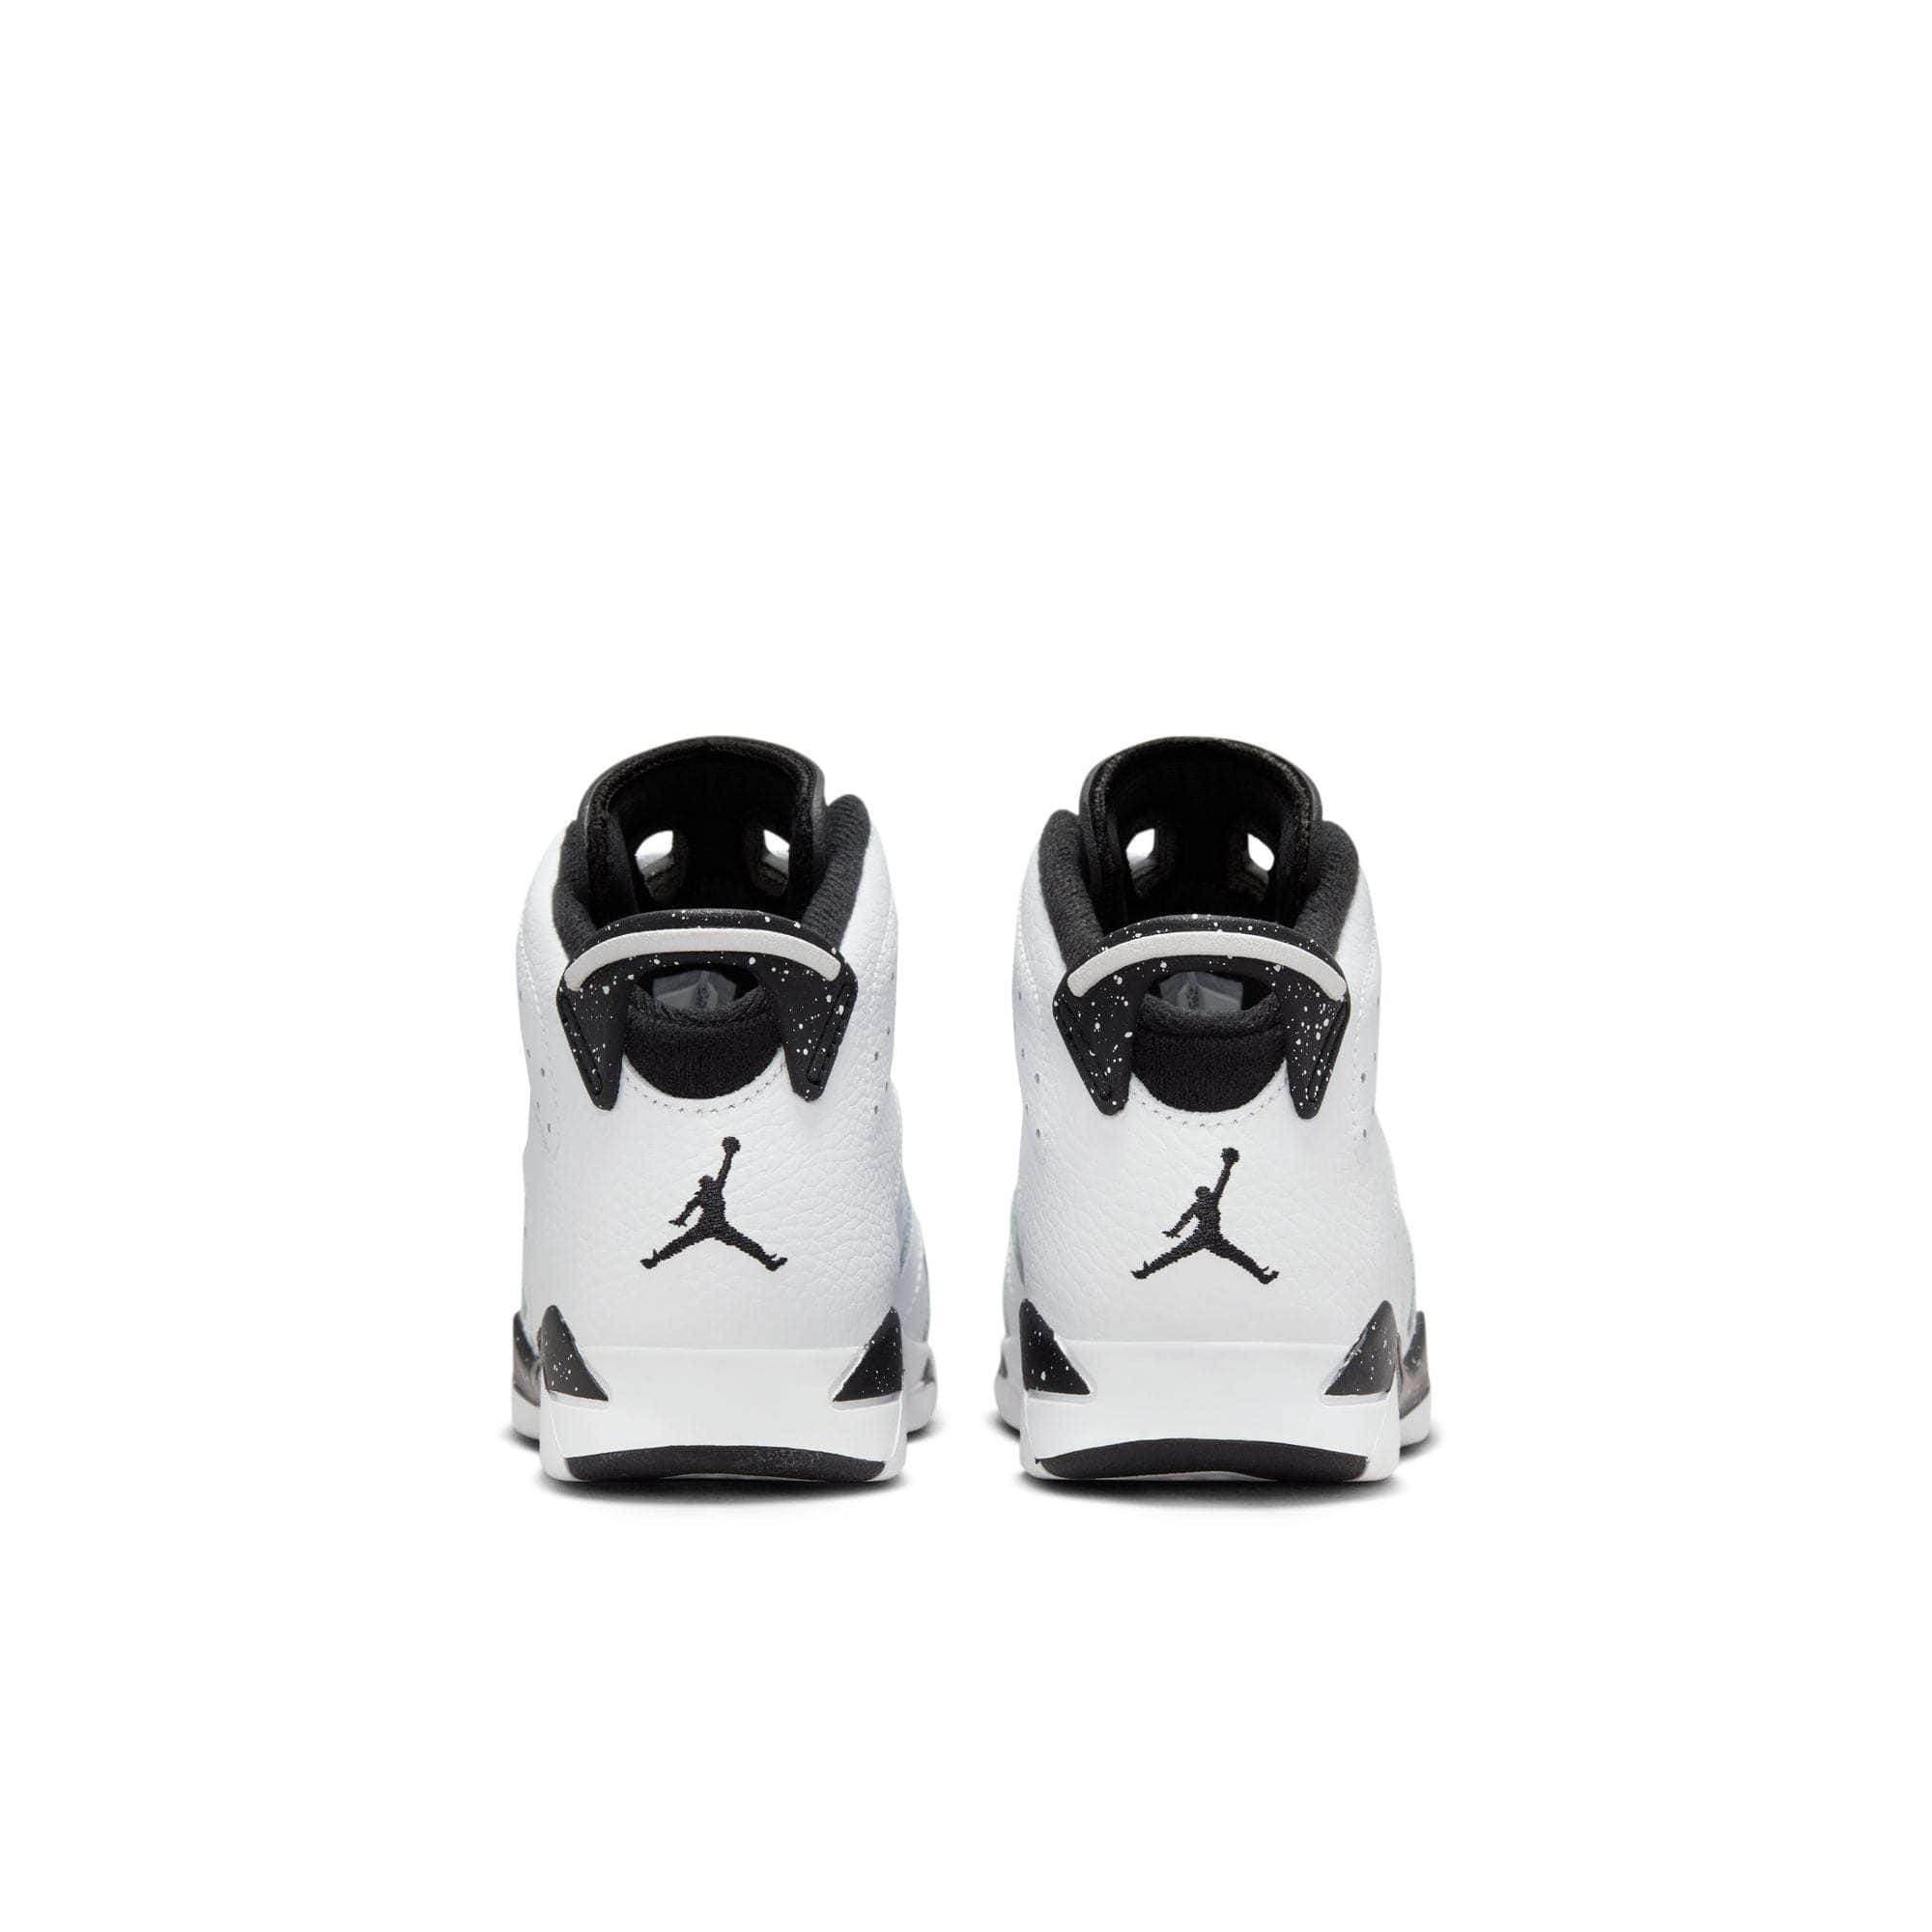 Air Jordan FOOTWEAR Air Jordan 6 Retro “Reverse Oreo” - Kid's PS